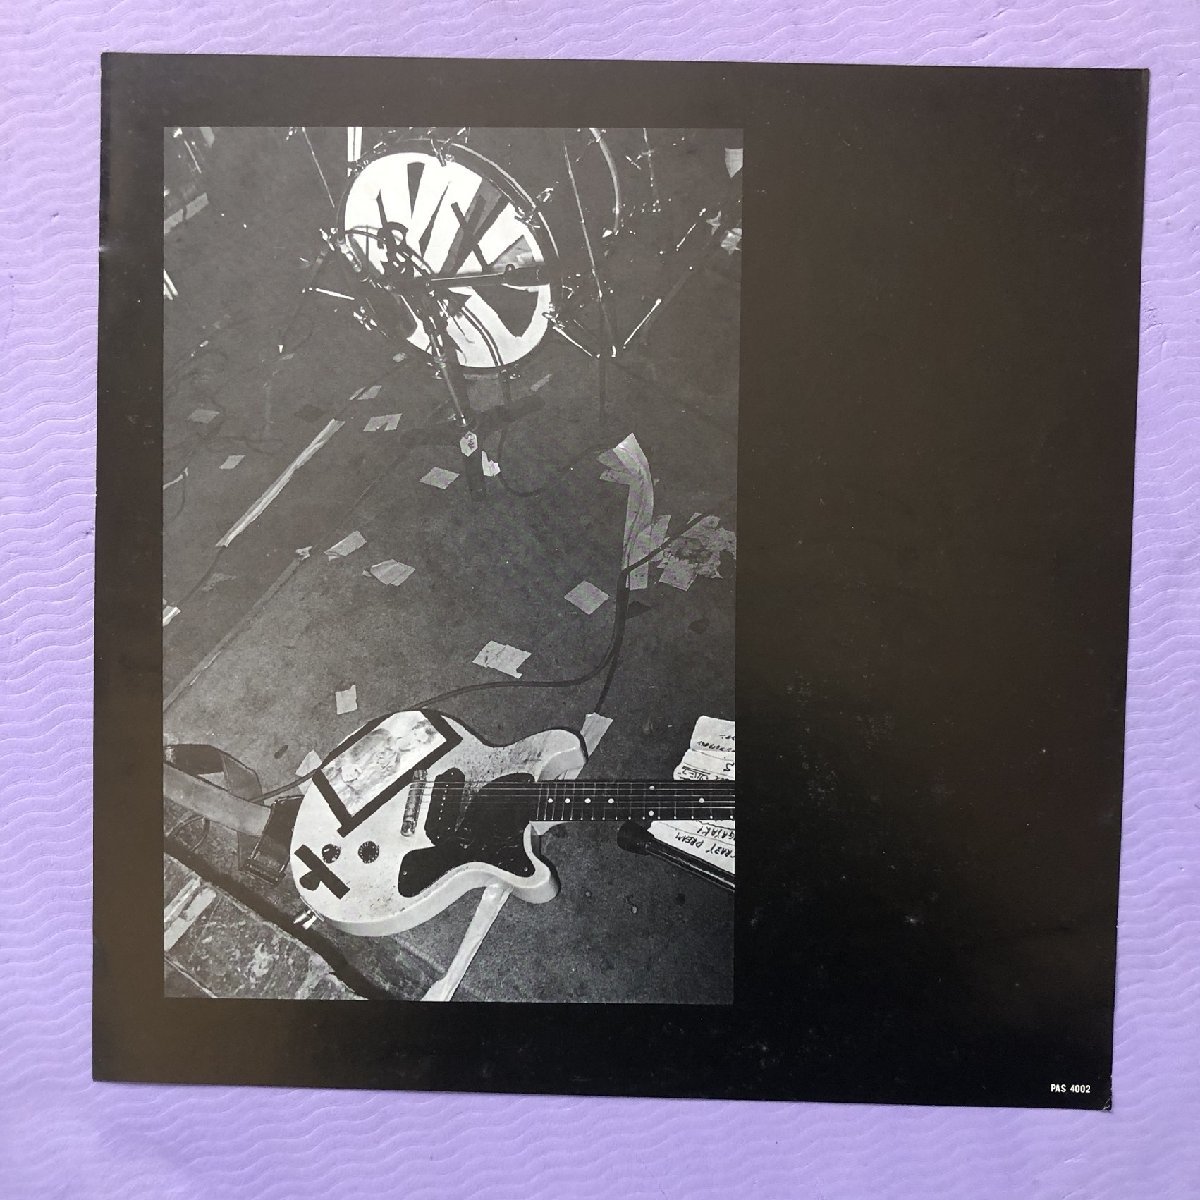 良盤 恒松正敏(ツネマツマサトシ) Masatoshi Tsunematsu 1981年 12''EPレコードSame オリジナルリリース盤 帯付 EDPS Friction_画像6